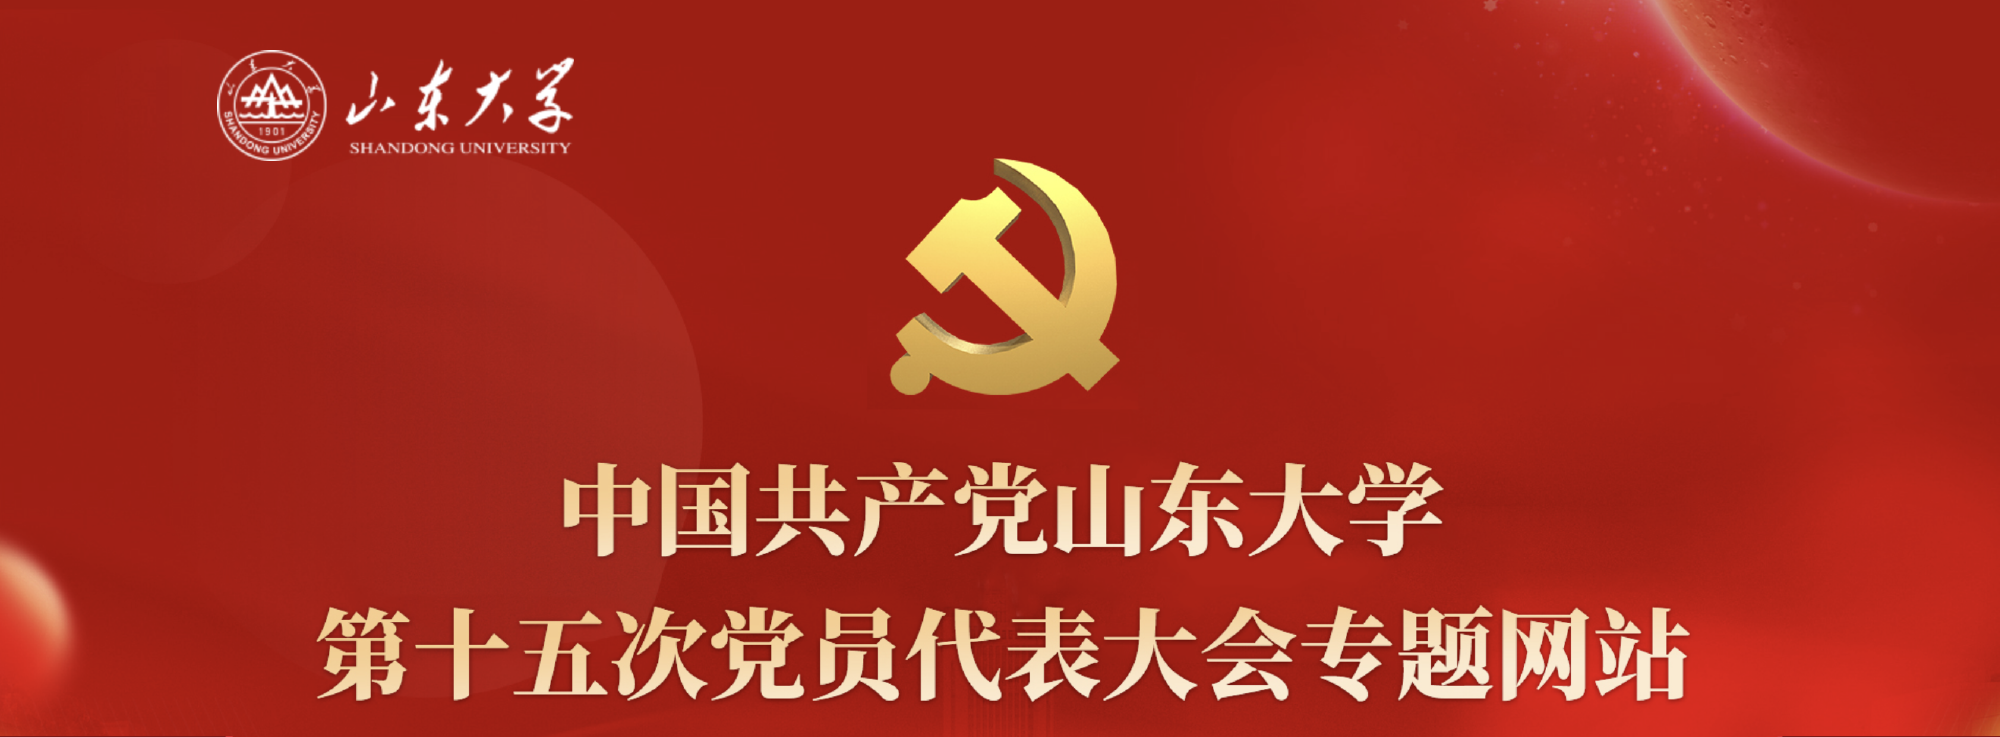 中国共产党山东大学第十五次党员代表大会专题